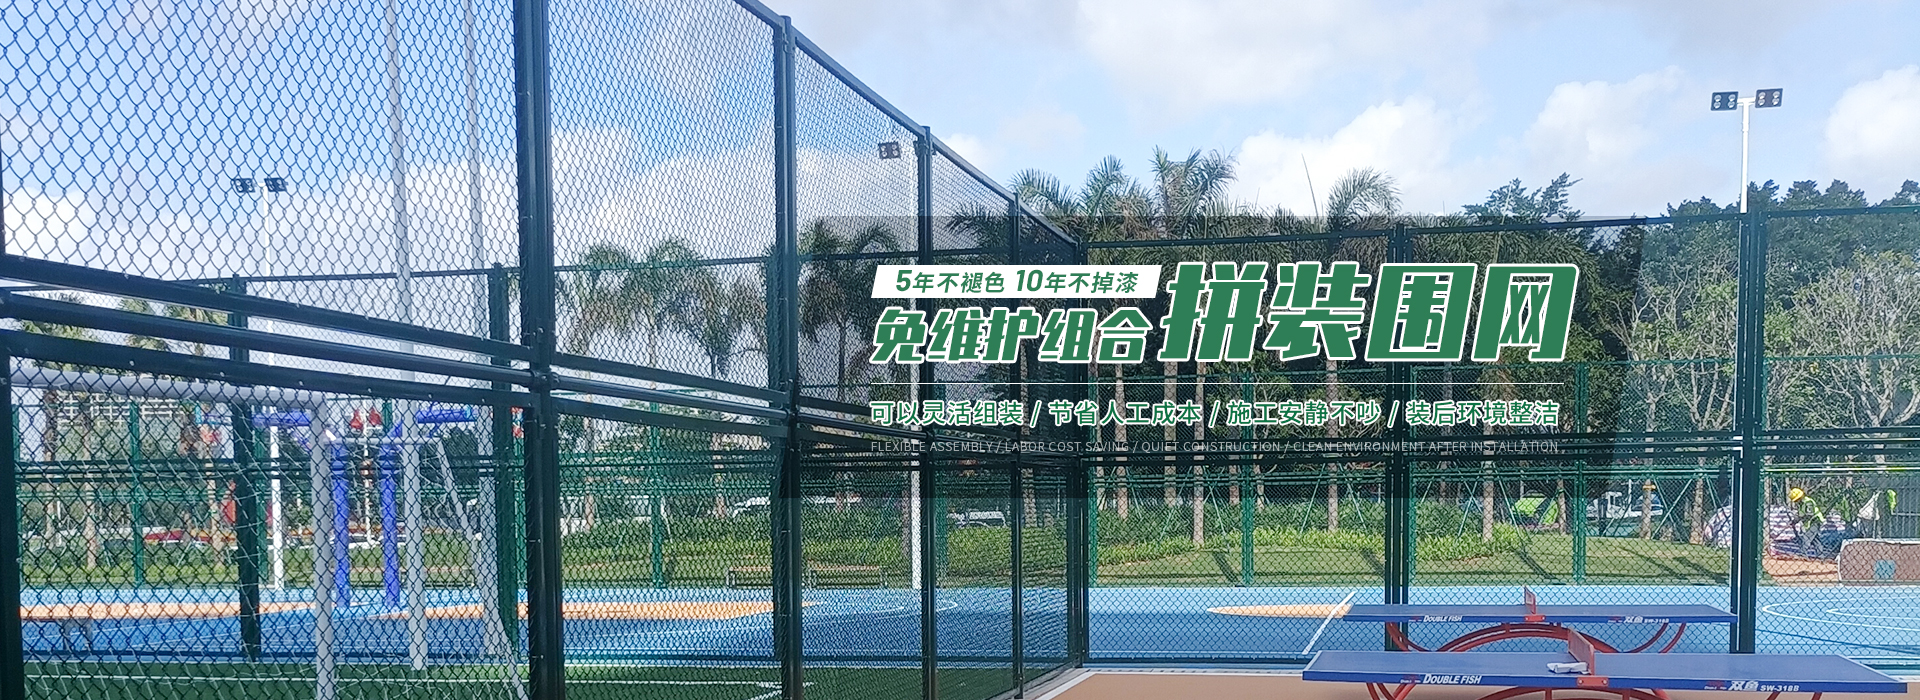 耐腾体育设备banner